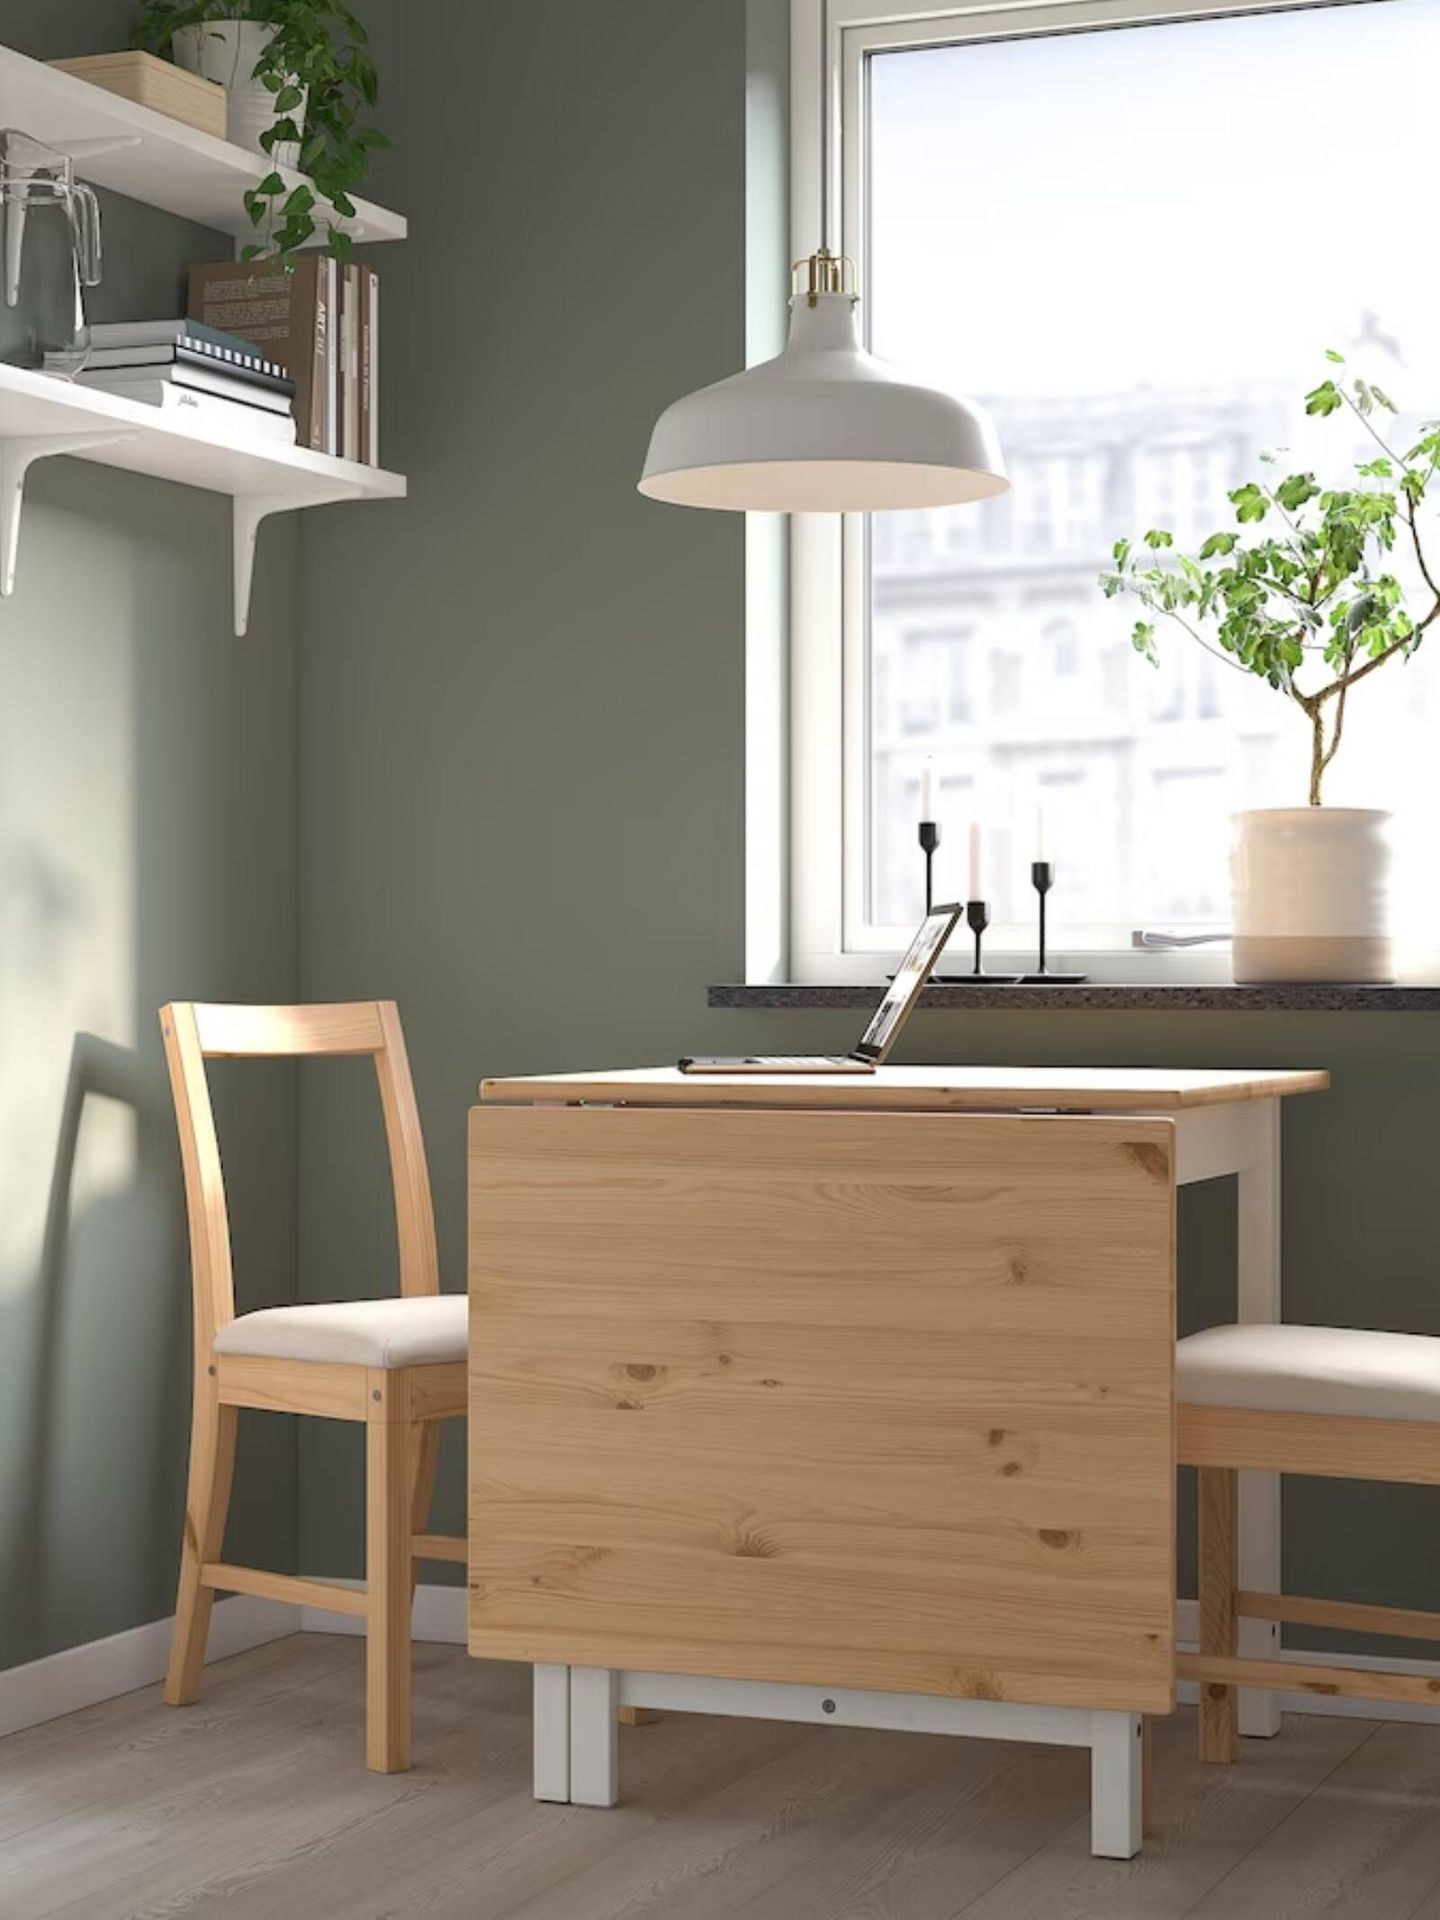 Blanco y madera, ideal para espacios de aire nórdico. (Cortesía/Ikea)